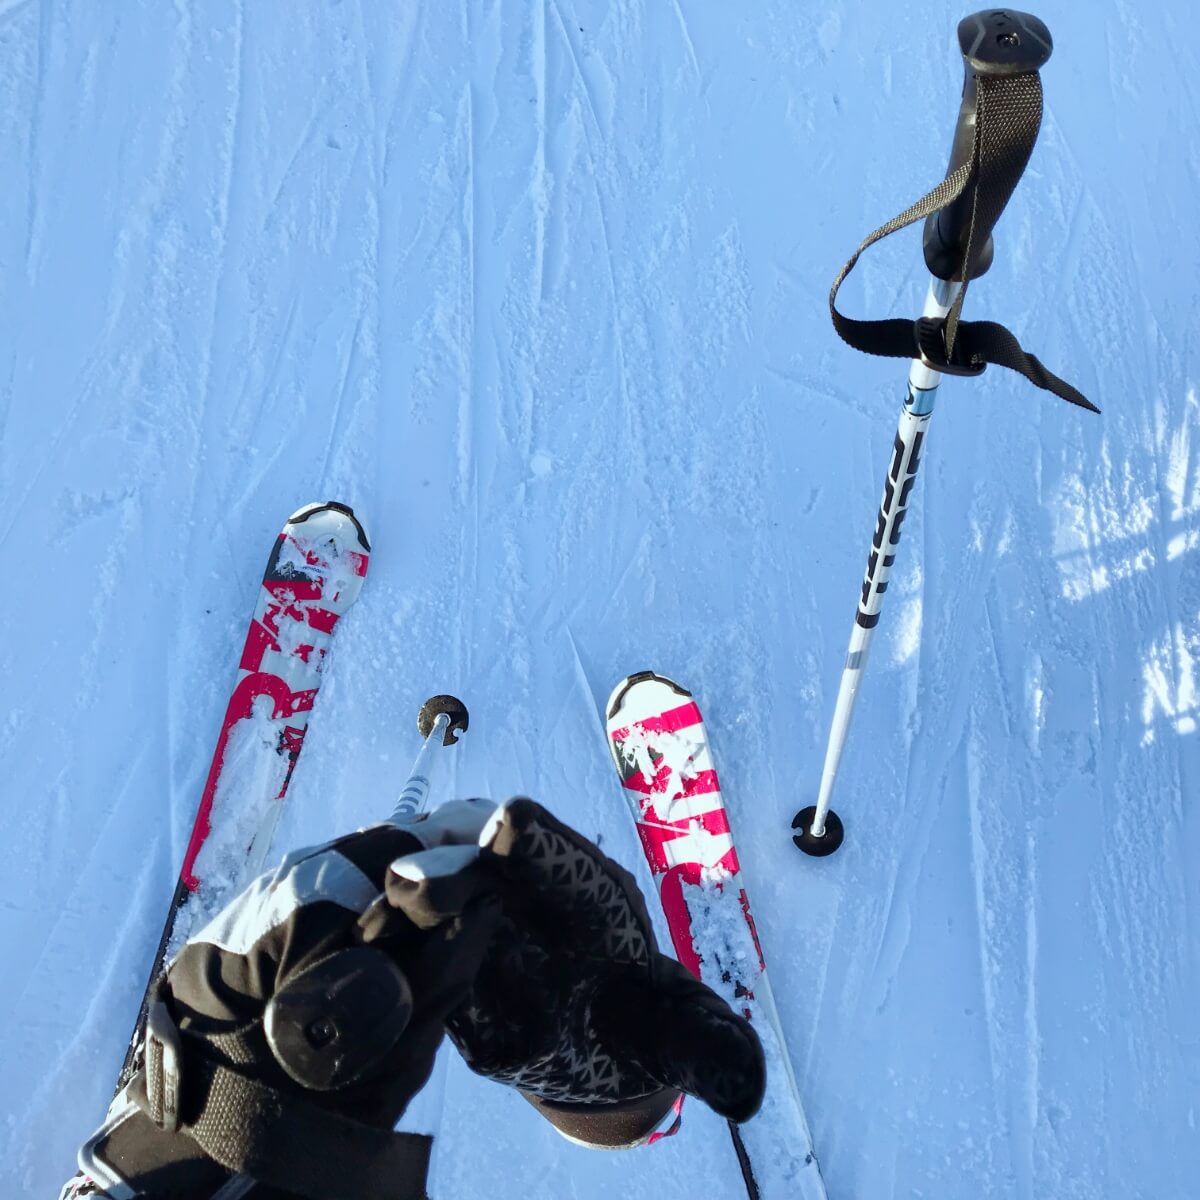 意大利Piani di Bobbio滑雪初体验